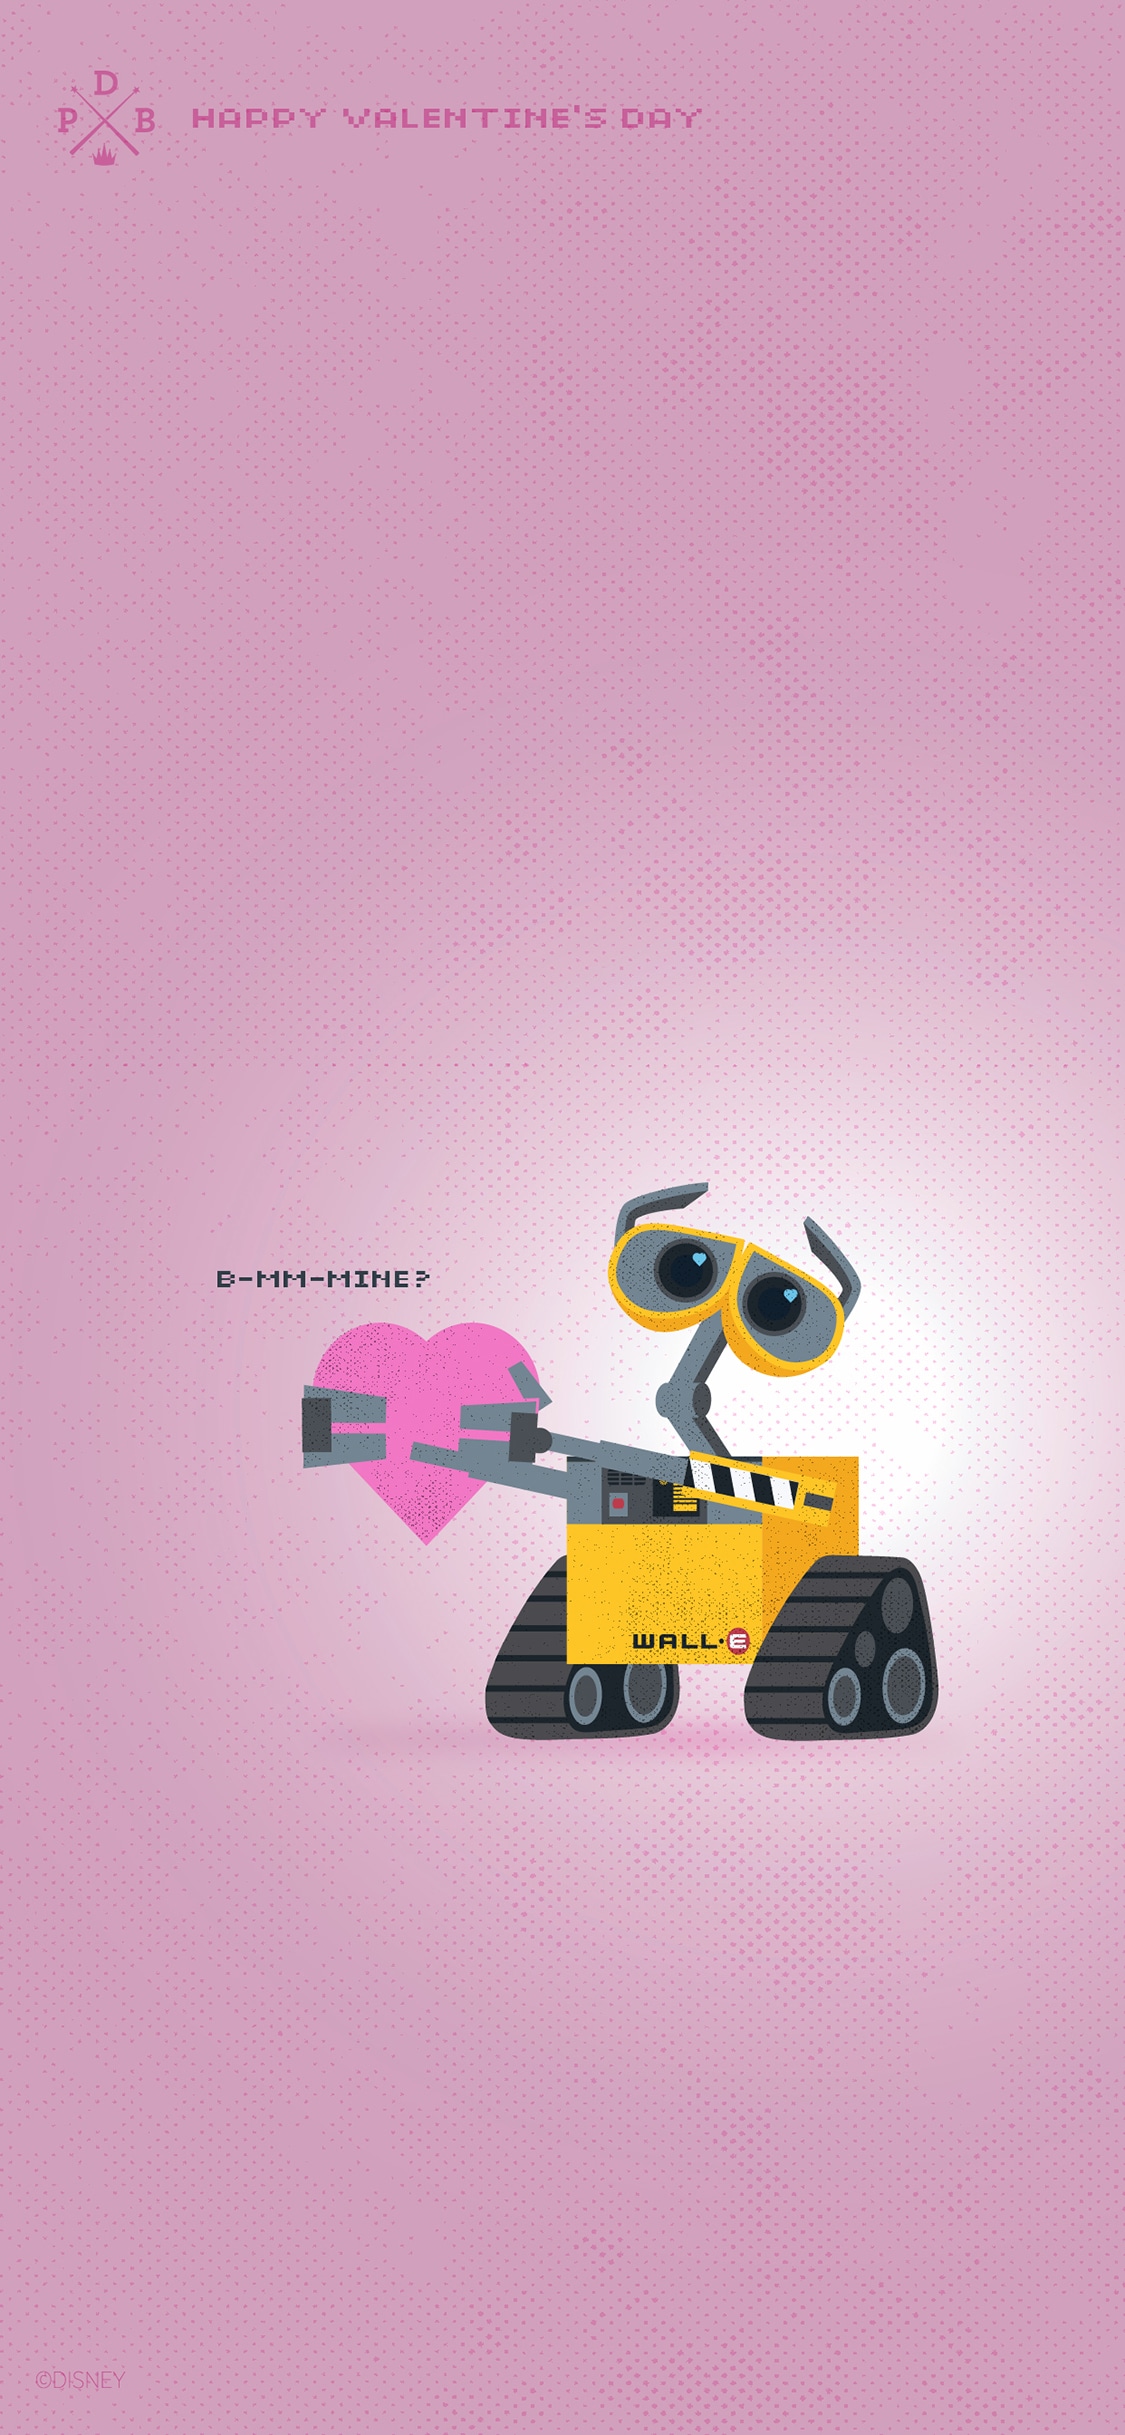 Hình nền Wall-E ngày Valentine sẽ khiến bạn thích thú. Với những hình ảnh ngộ nghĩnh và lãng mạn, bạn sẽ cảm thấy được tình cảm đong đầy trong giây phút đặt hình nền này cho thiết bị của mình.